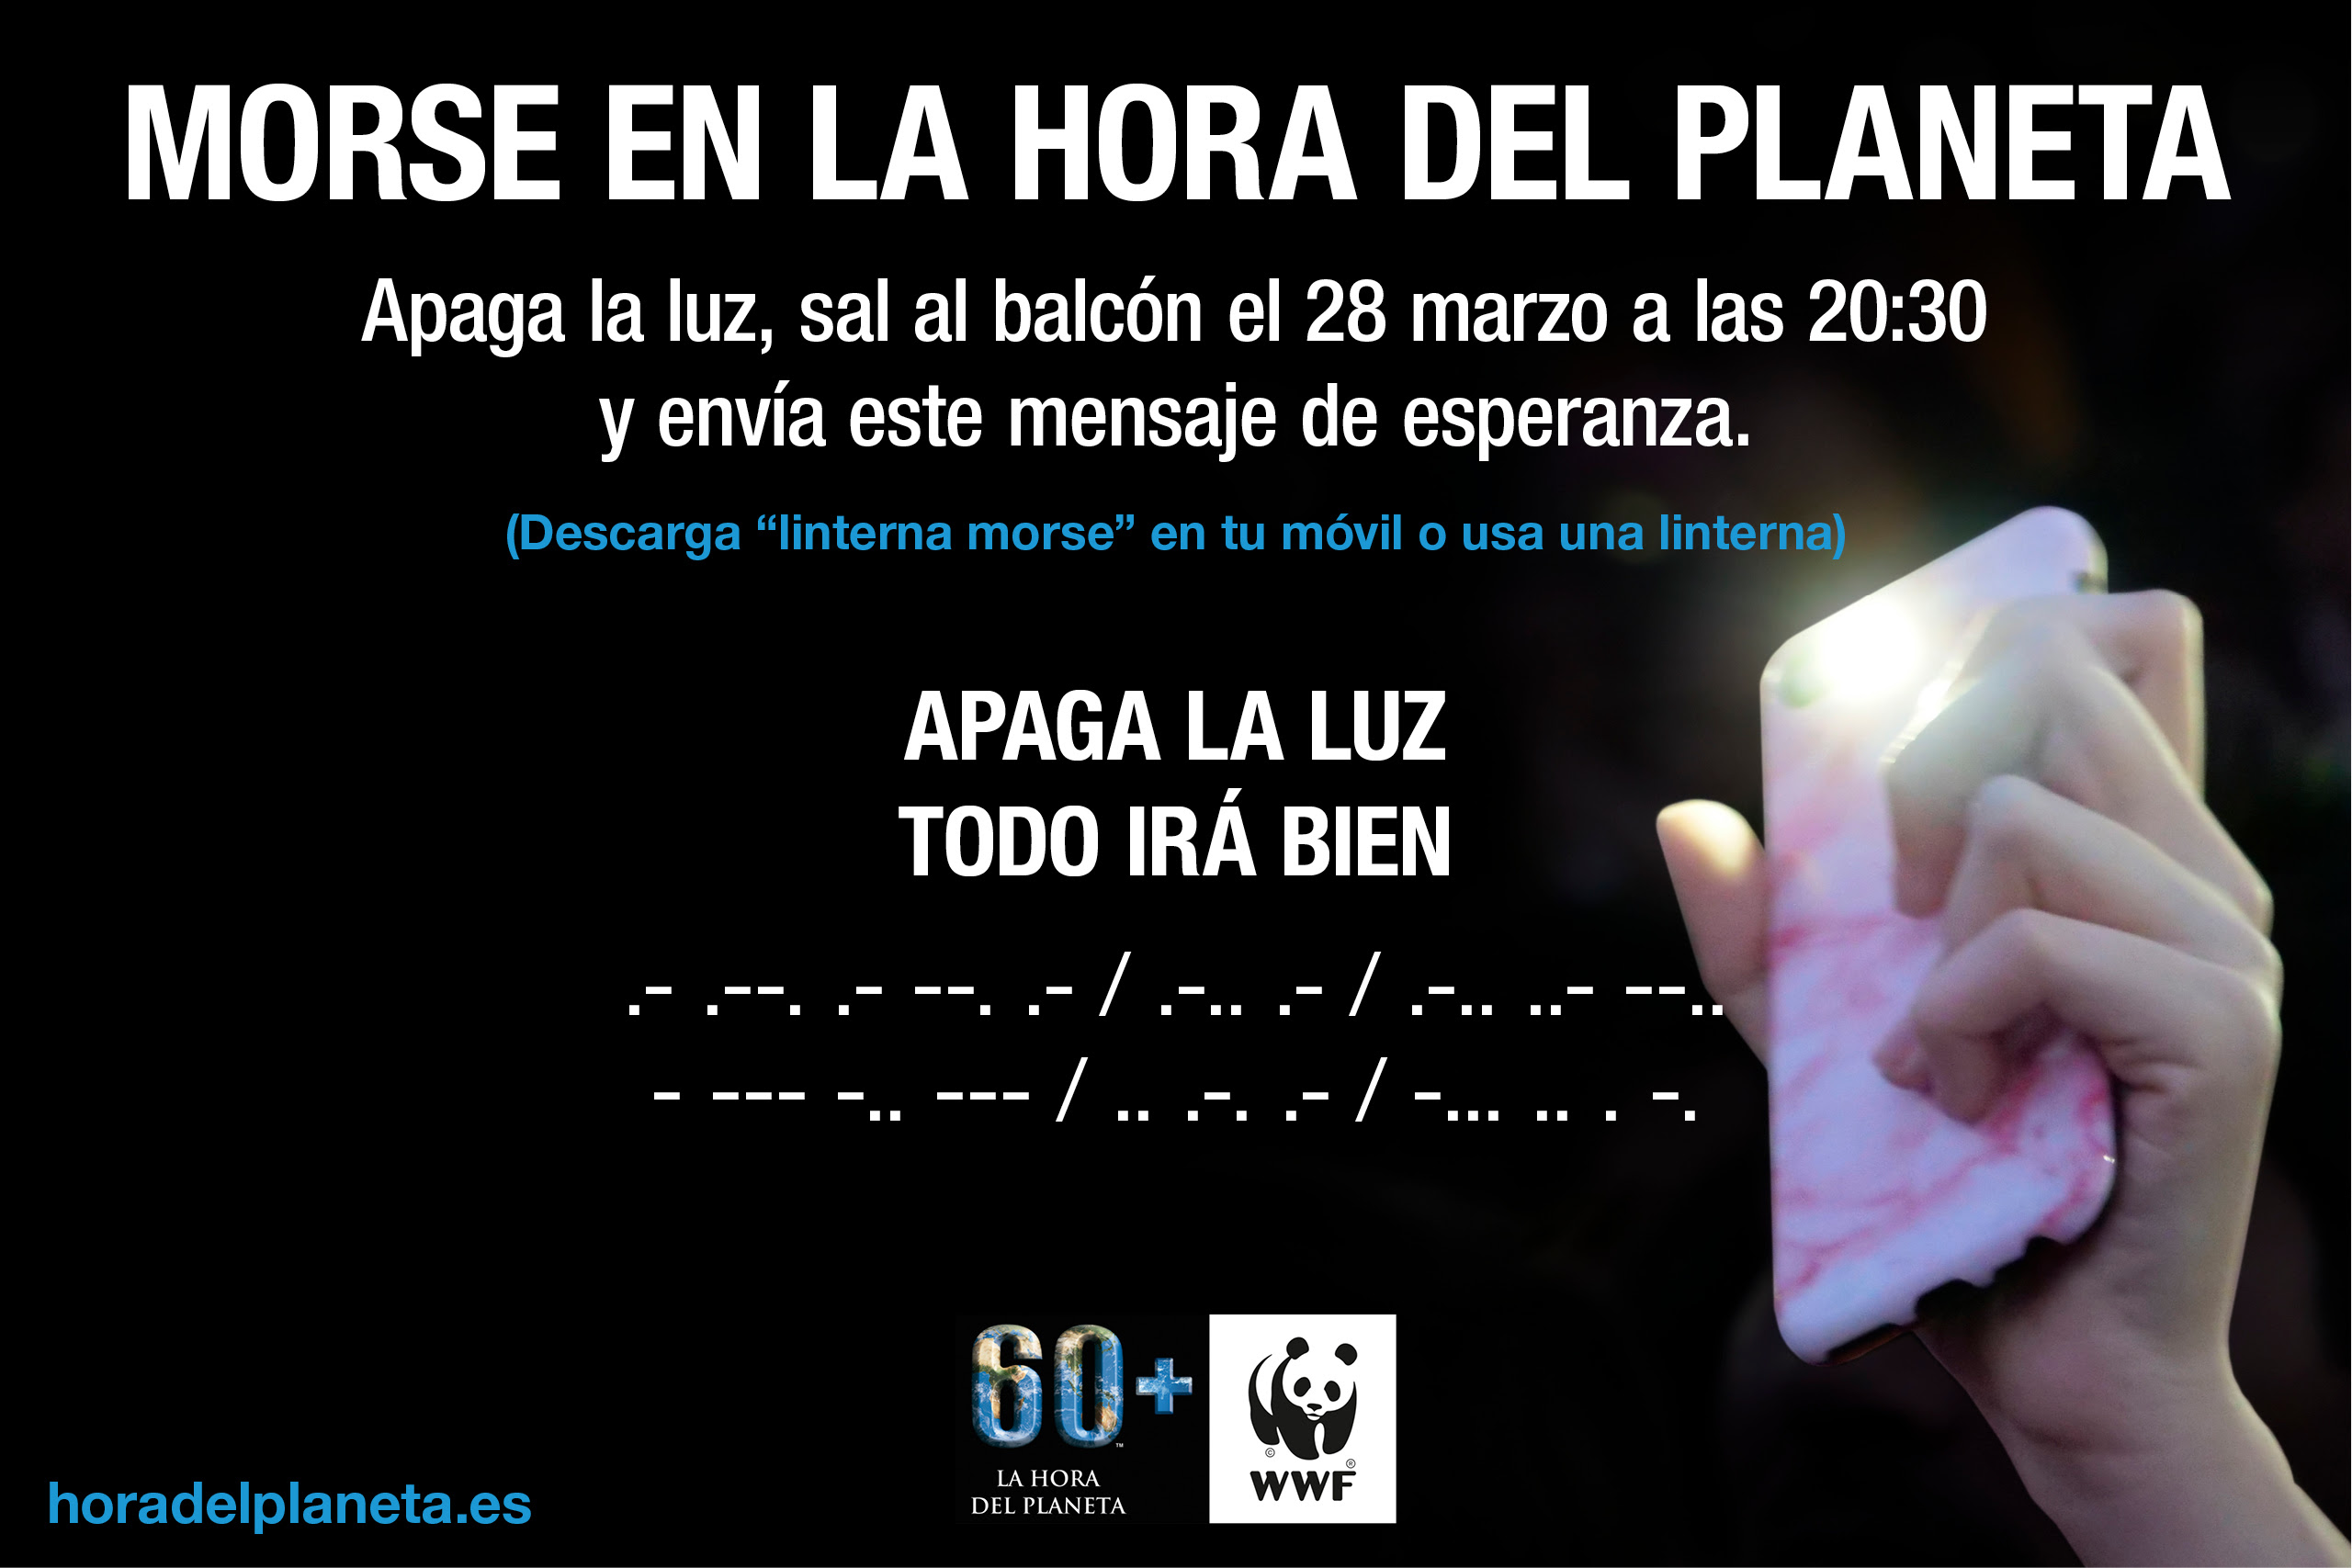 La Hora del Planeta 2020, con el mensaje en morse:  "Apaga la luz. Todo irá bien”. Imagen: WWF